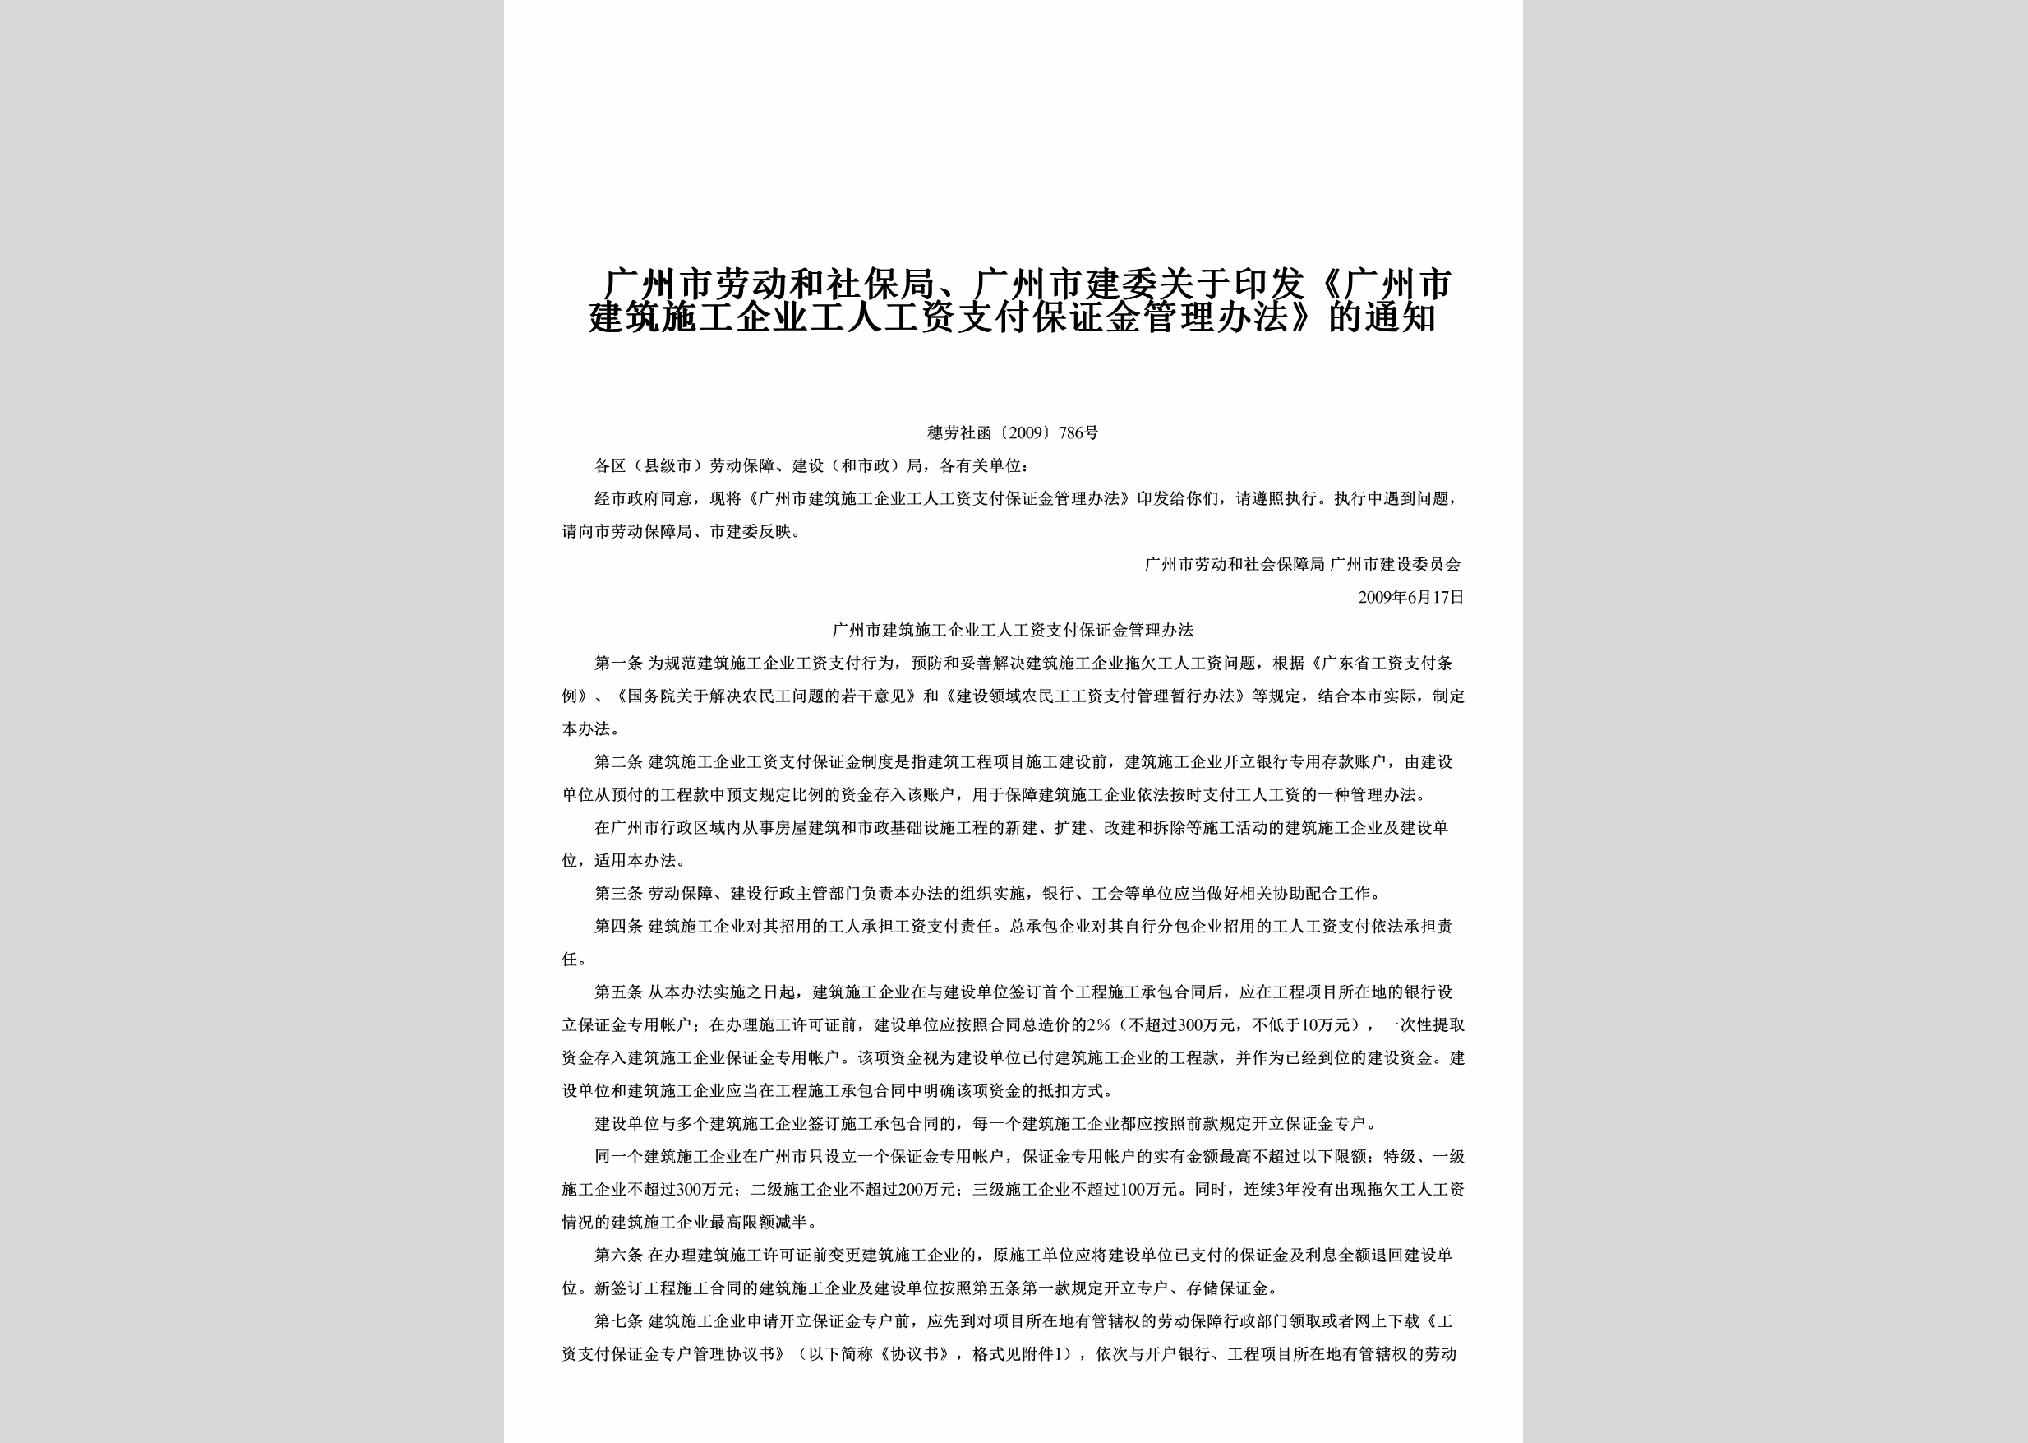 穗劳社函[2009]786号：关于印发《广州市建筑施工企业工人工资支付保证金管理办法》的通知